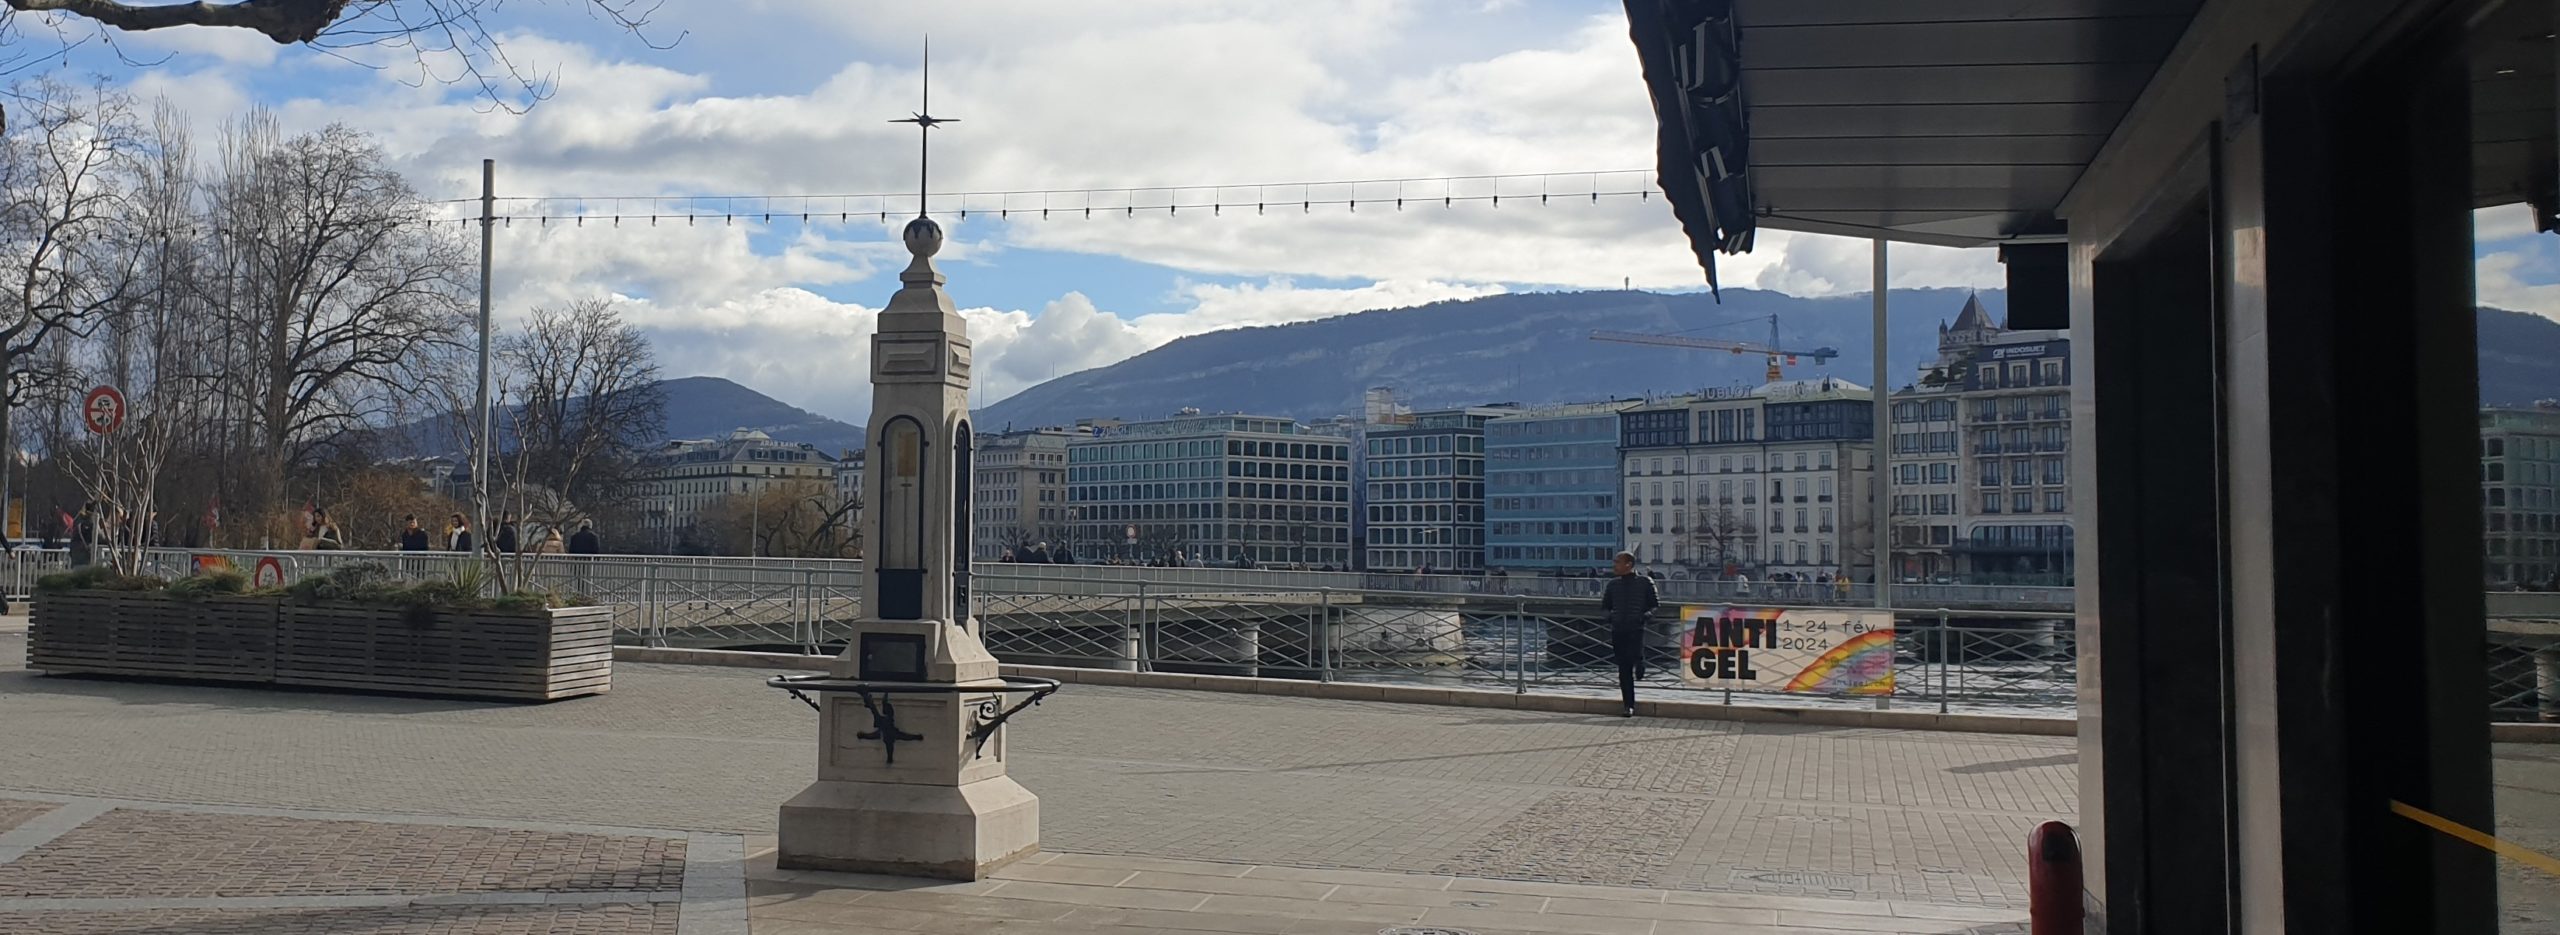 Les colonnes météorologiques de Genève